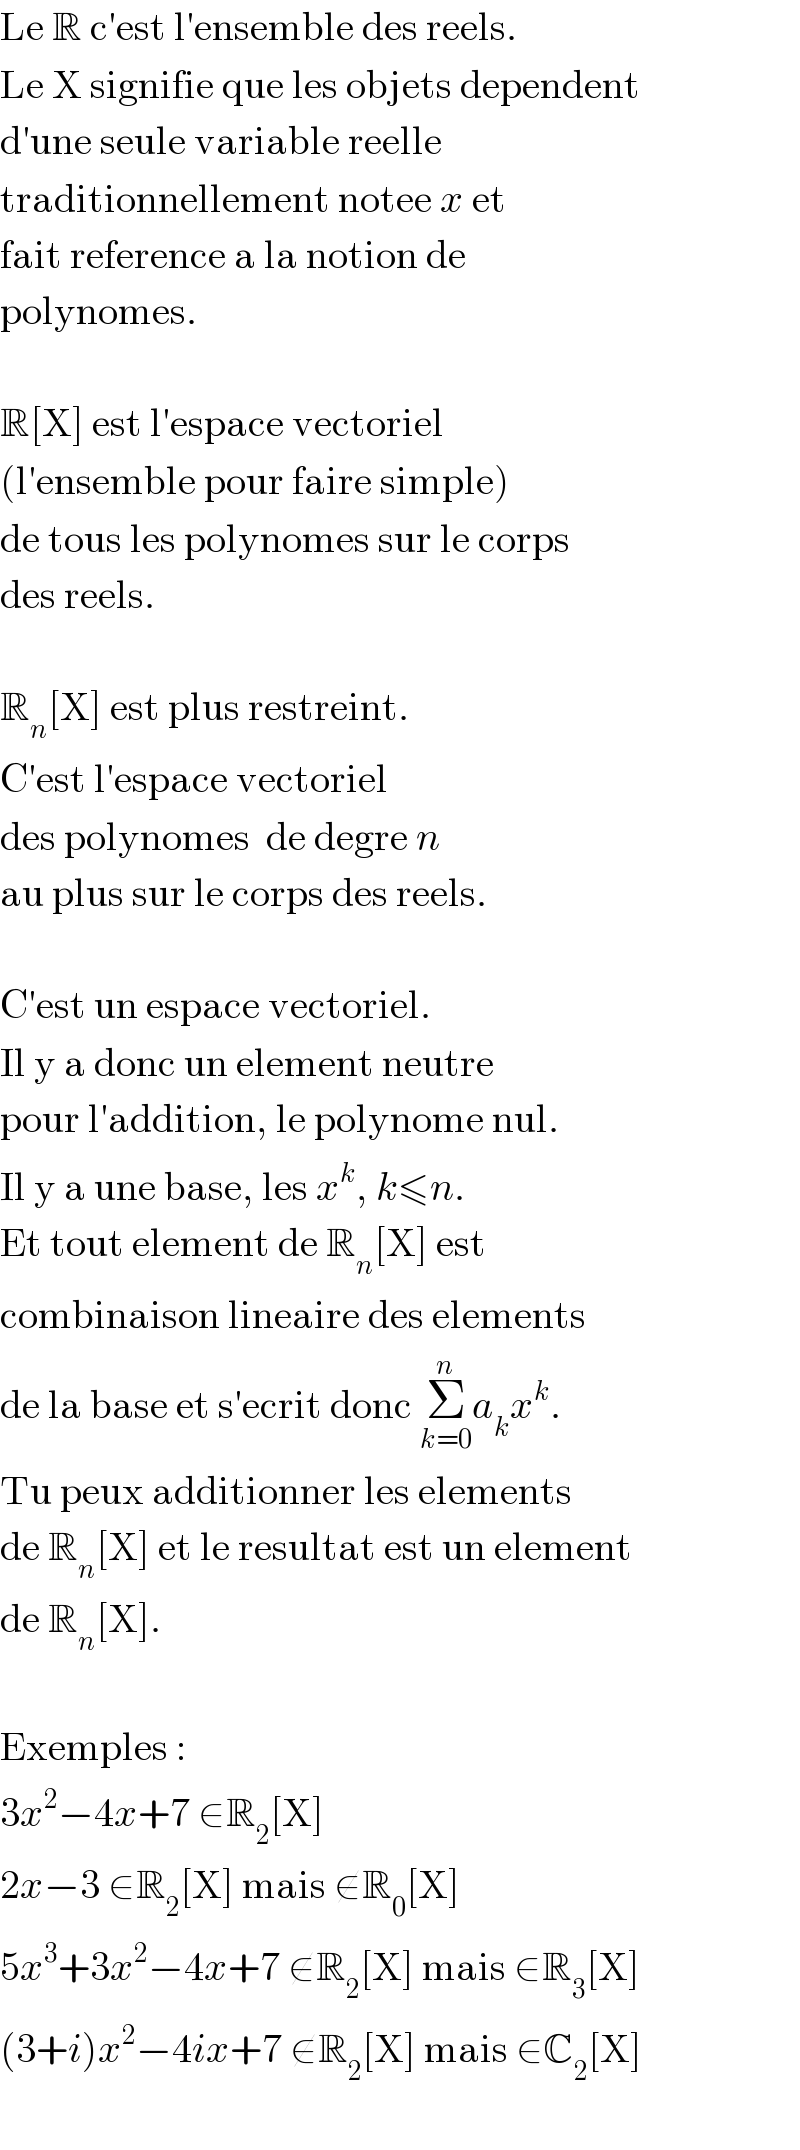 Le R c′est l′ensemble des reels.  Le X signifie que les objets dependent  d′une seule variable reelle  traditionnellement notee x et  fait reference a la notion de  polynomes.    R[X] est l′espace vectoriel  (l′ensemble pour faire simple)  de tous les polynomes sur le corps  des reels.    R_n [X] est plus restreint.  C′est l′espace vectoriel  des polynomes  de degre n  au plus sur le corps des reels.    C′est un espace vectoriel.  Il y a donc un element neutre  pour l′addition, le polynome nul.  Il y a une base, les x^k , k≤n.  Et tout element de R_n [X] est  combinaison lineaire des elements  de la base et s′ecrit donc Σ_(k=0) ^n a_k x^k .  Tu peux additionner les elements  de R_n [X] et le resultat est un element  de R_n [X].    Exemples :  3x^2 −4x+7 ∈R_2 [X]  2x−3 ∈R_2 [X] mais ∉R_0 [X]  5x^3 +3x^2 −4x+7 ∉R_2 [X] mais ∈R_3 [X]  (3+i)x^2 −4ix+7 ∉R_2 [X] mais ∈C_2 [X]    